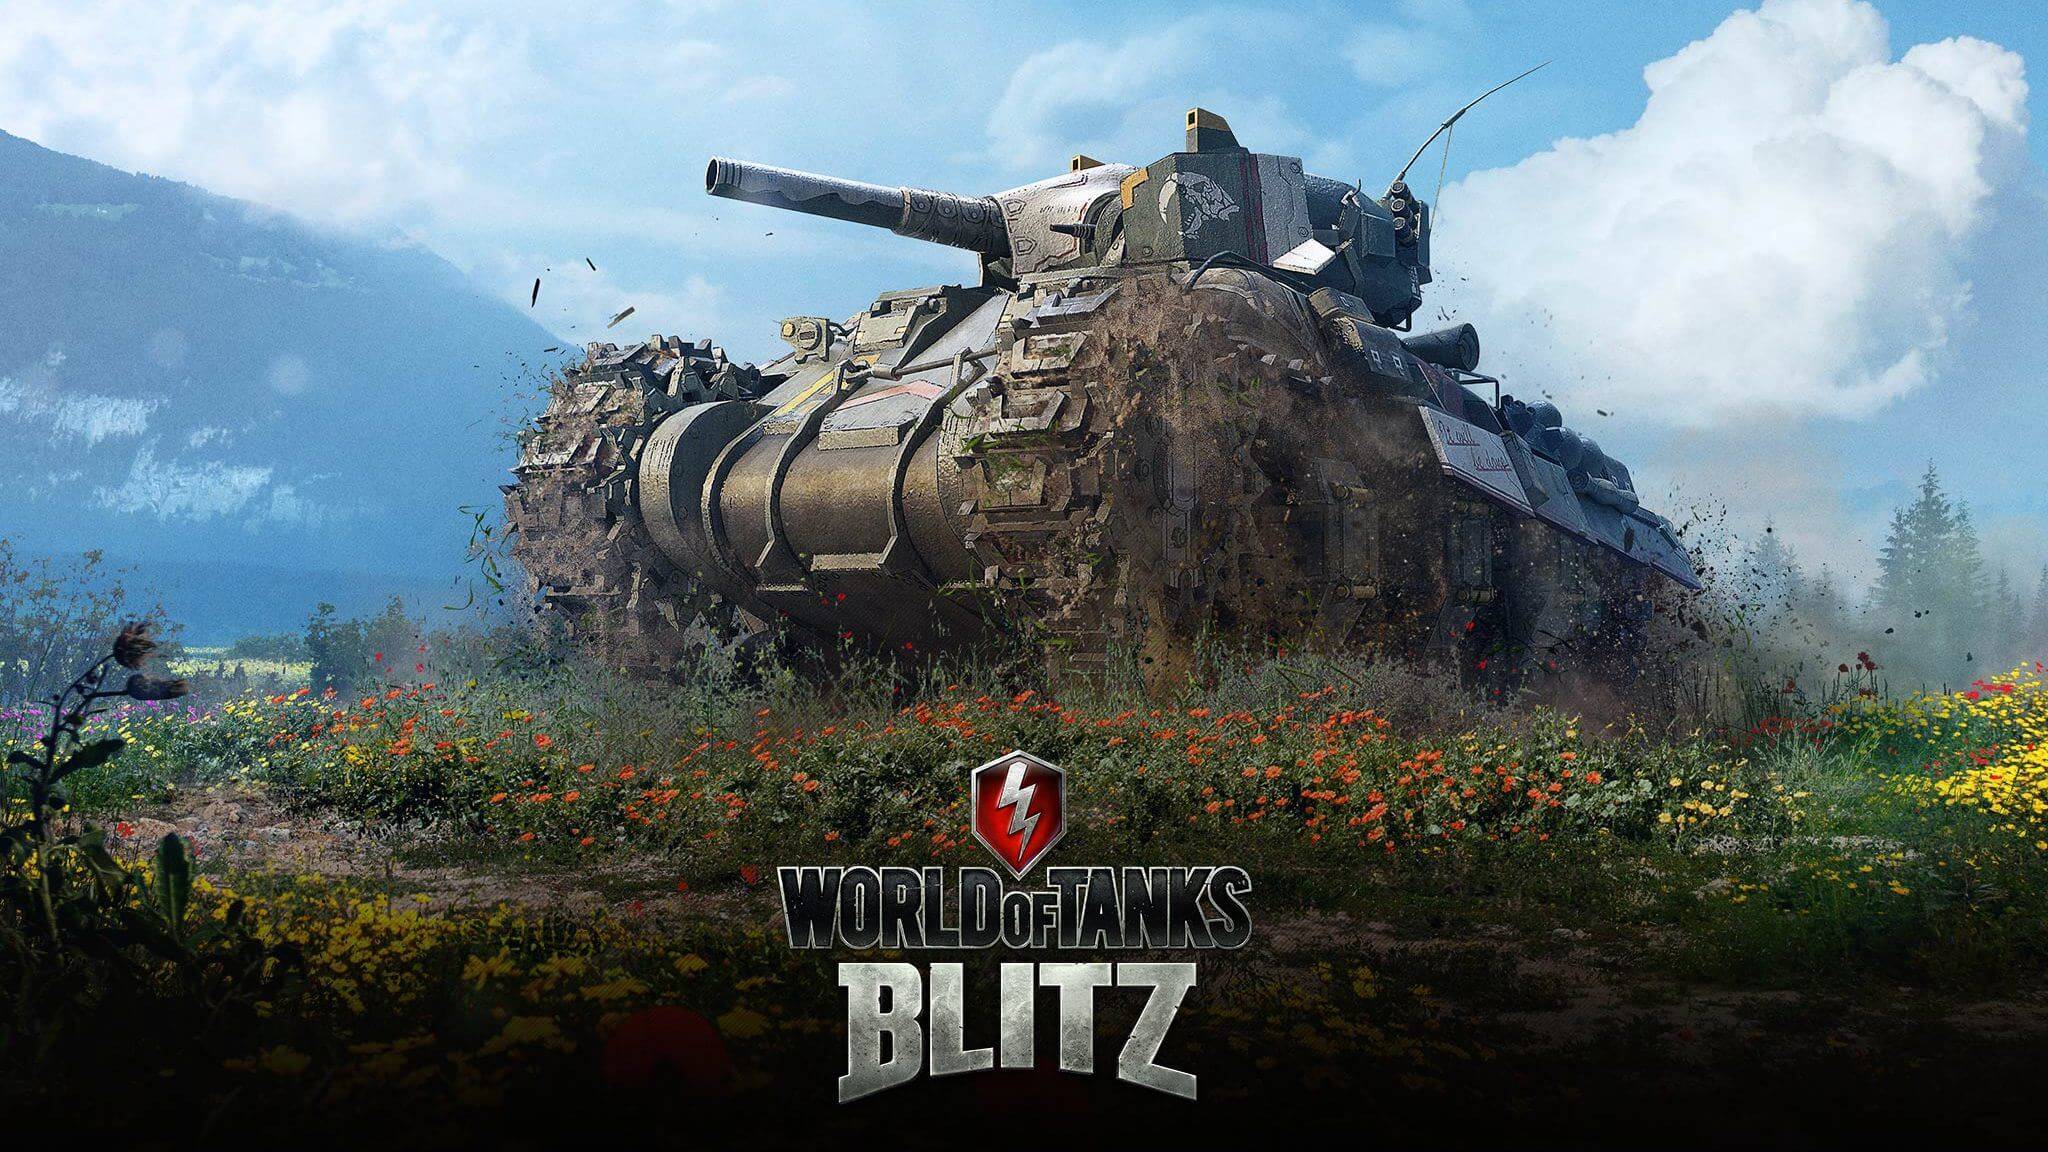 world of tanks blitz bonus codes 2021 asia